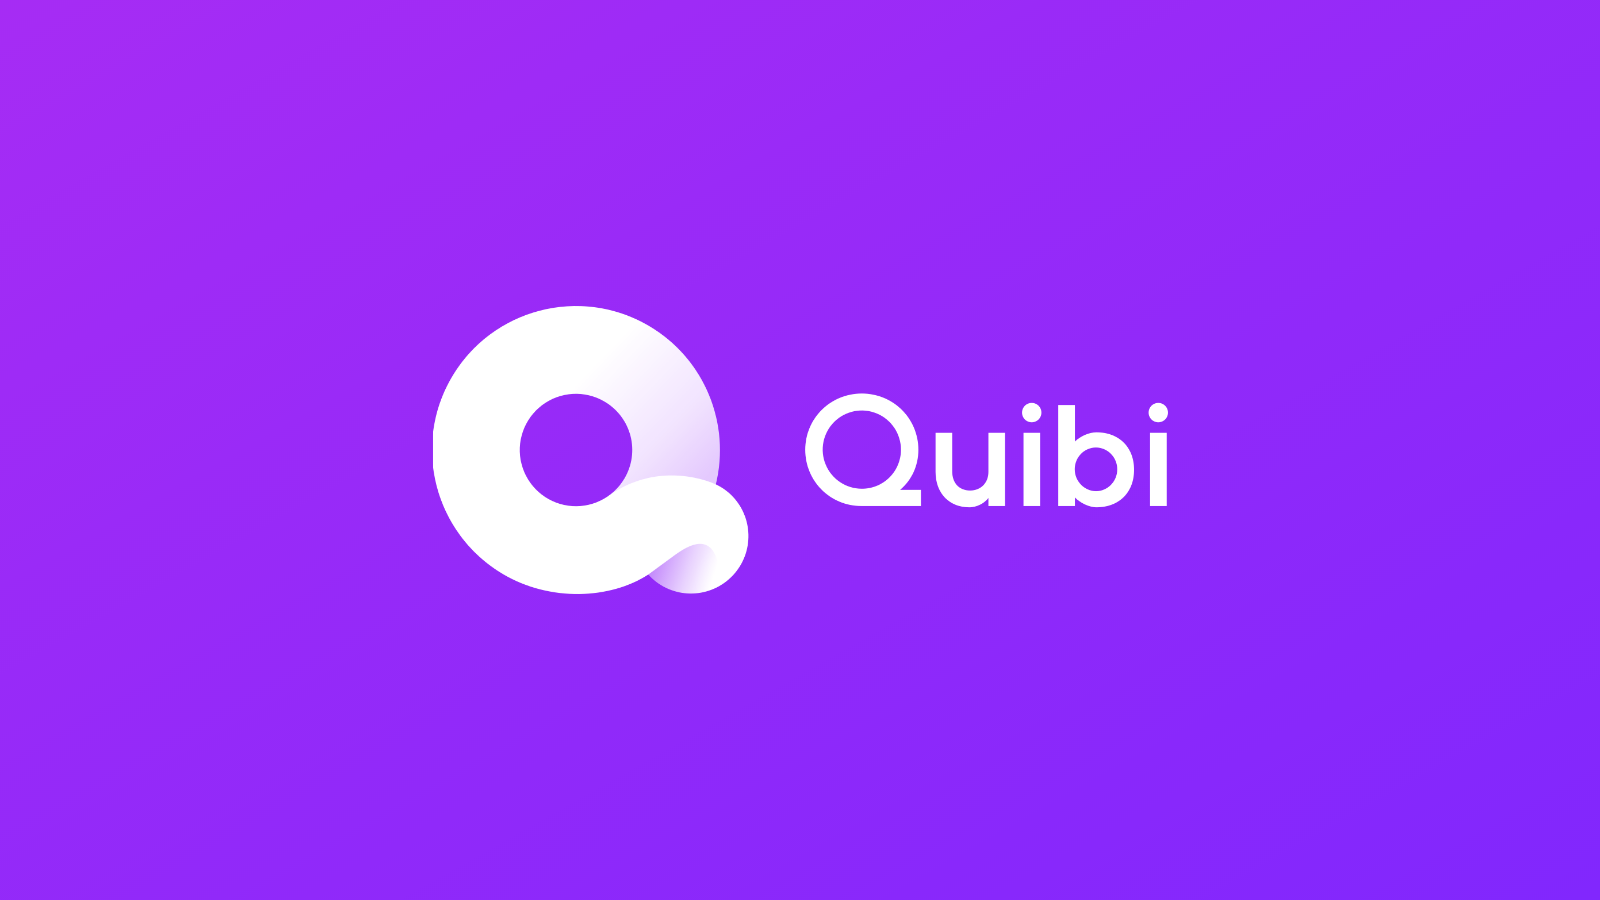 إطلاق خدمة البث الجديدة "Quibi" بإصدار تجريبي مجاني لمدة 90 يومًا 1